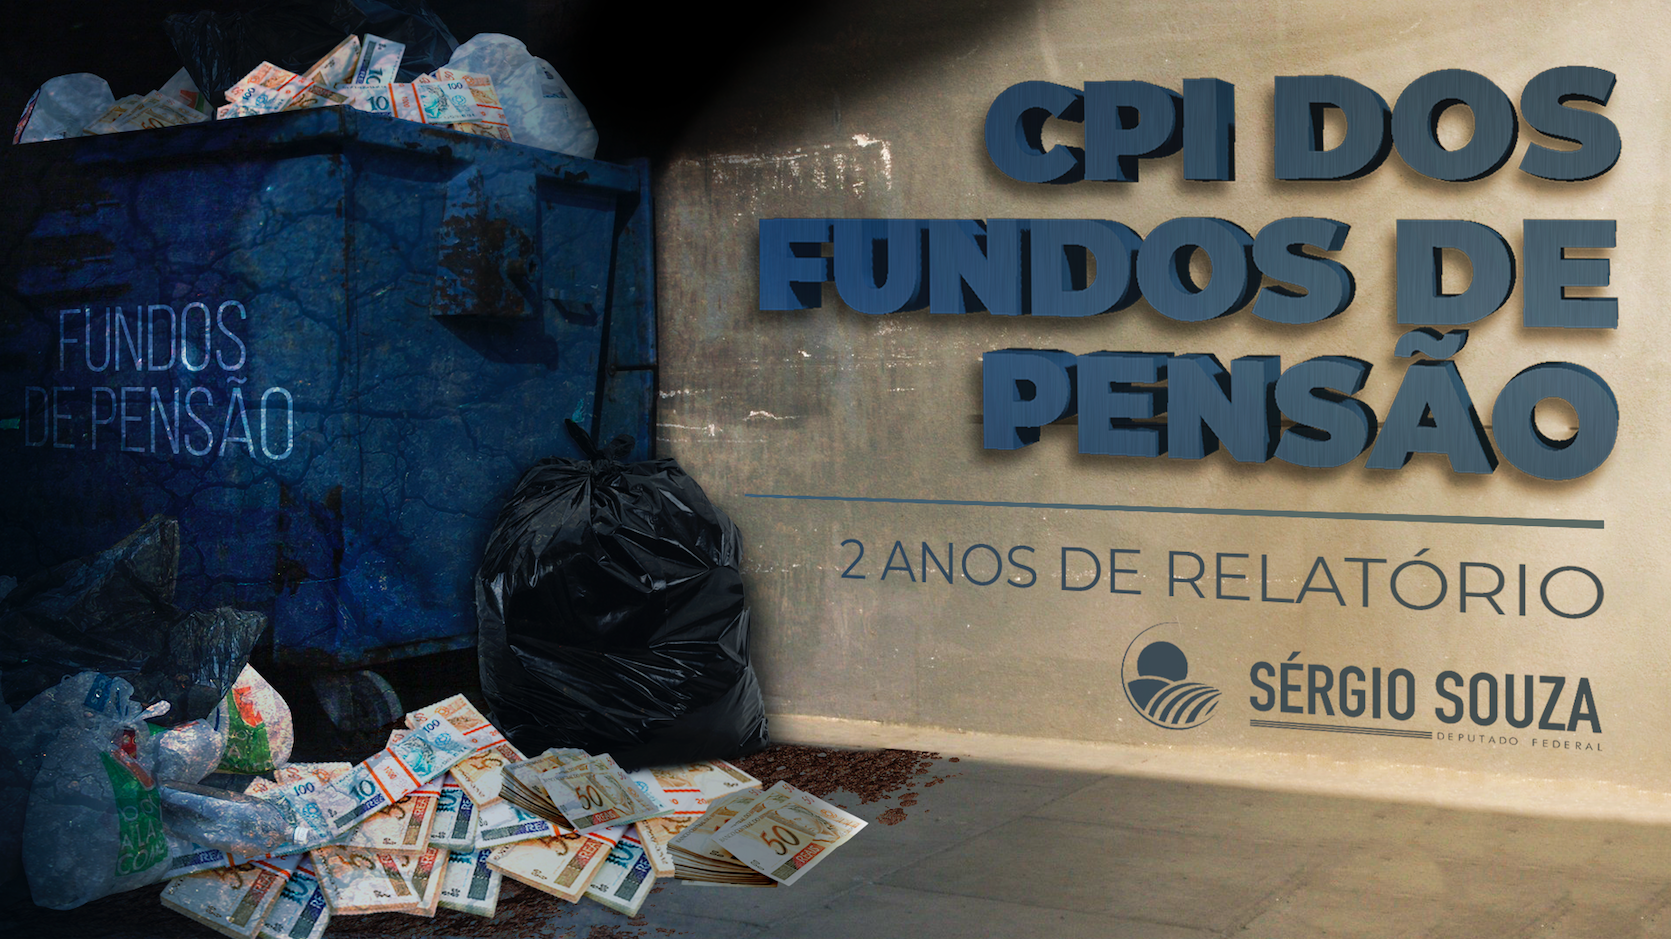 CPI Fundos de pensão relatório 2 anos - CPI Fundos de pensão relatório 2 anos